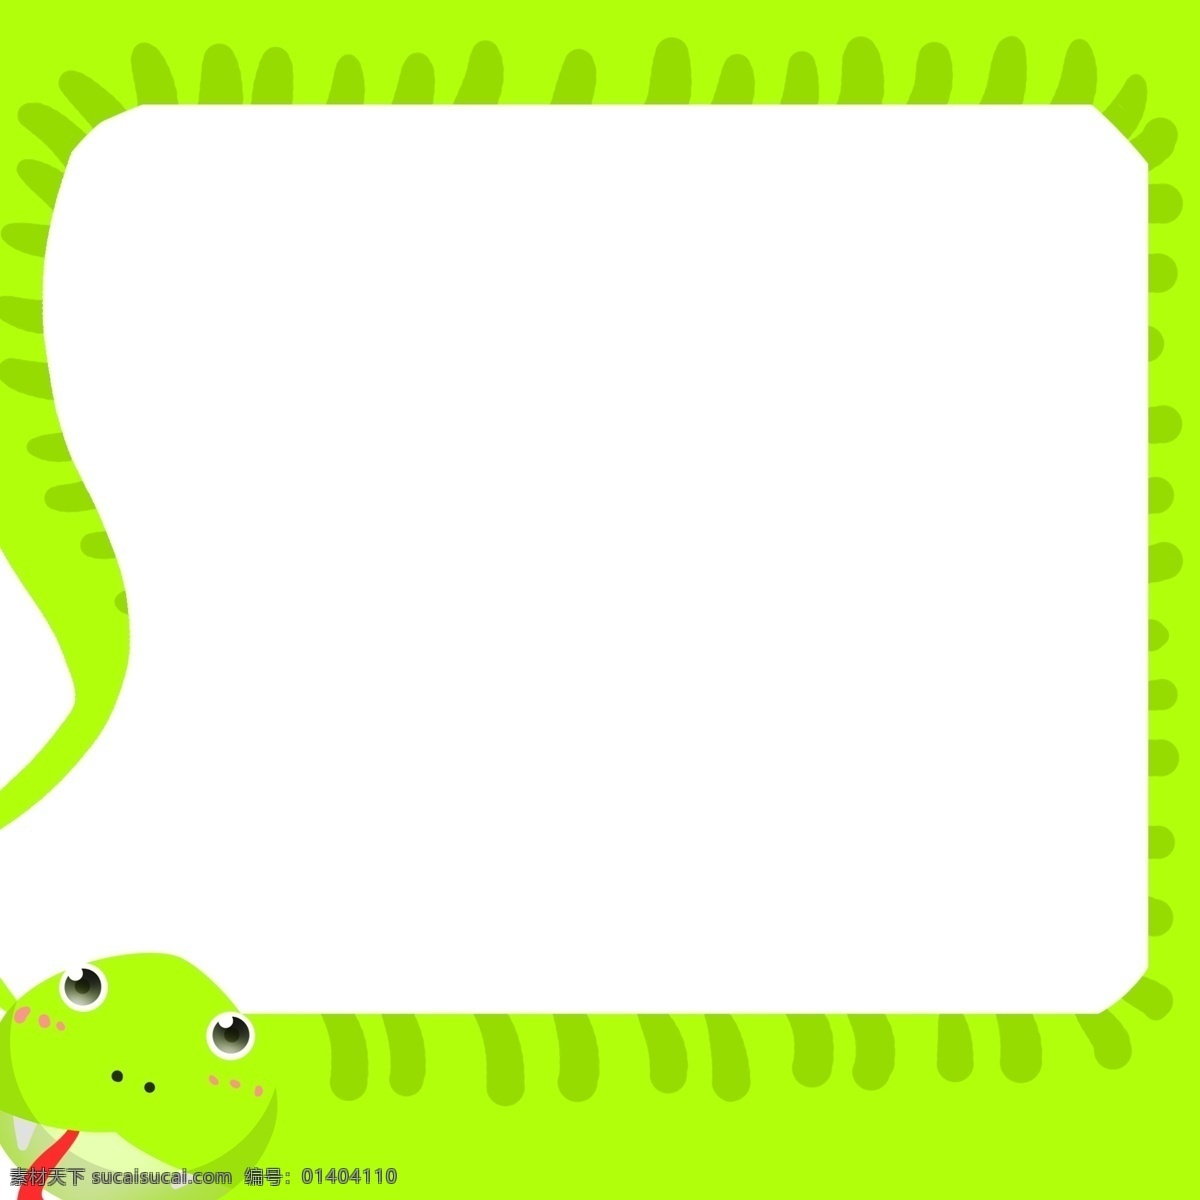 卡通 绿色 青蛇 边框 绿 蛇 装饰 可爱 小动物边框 动物卡通边框 动物装饰边框 绿色边框